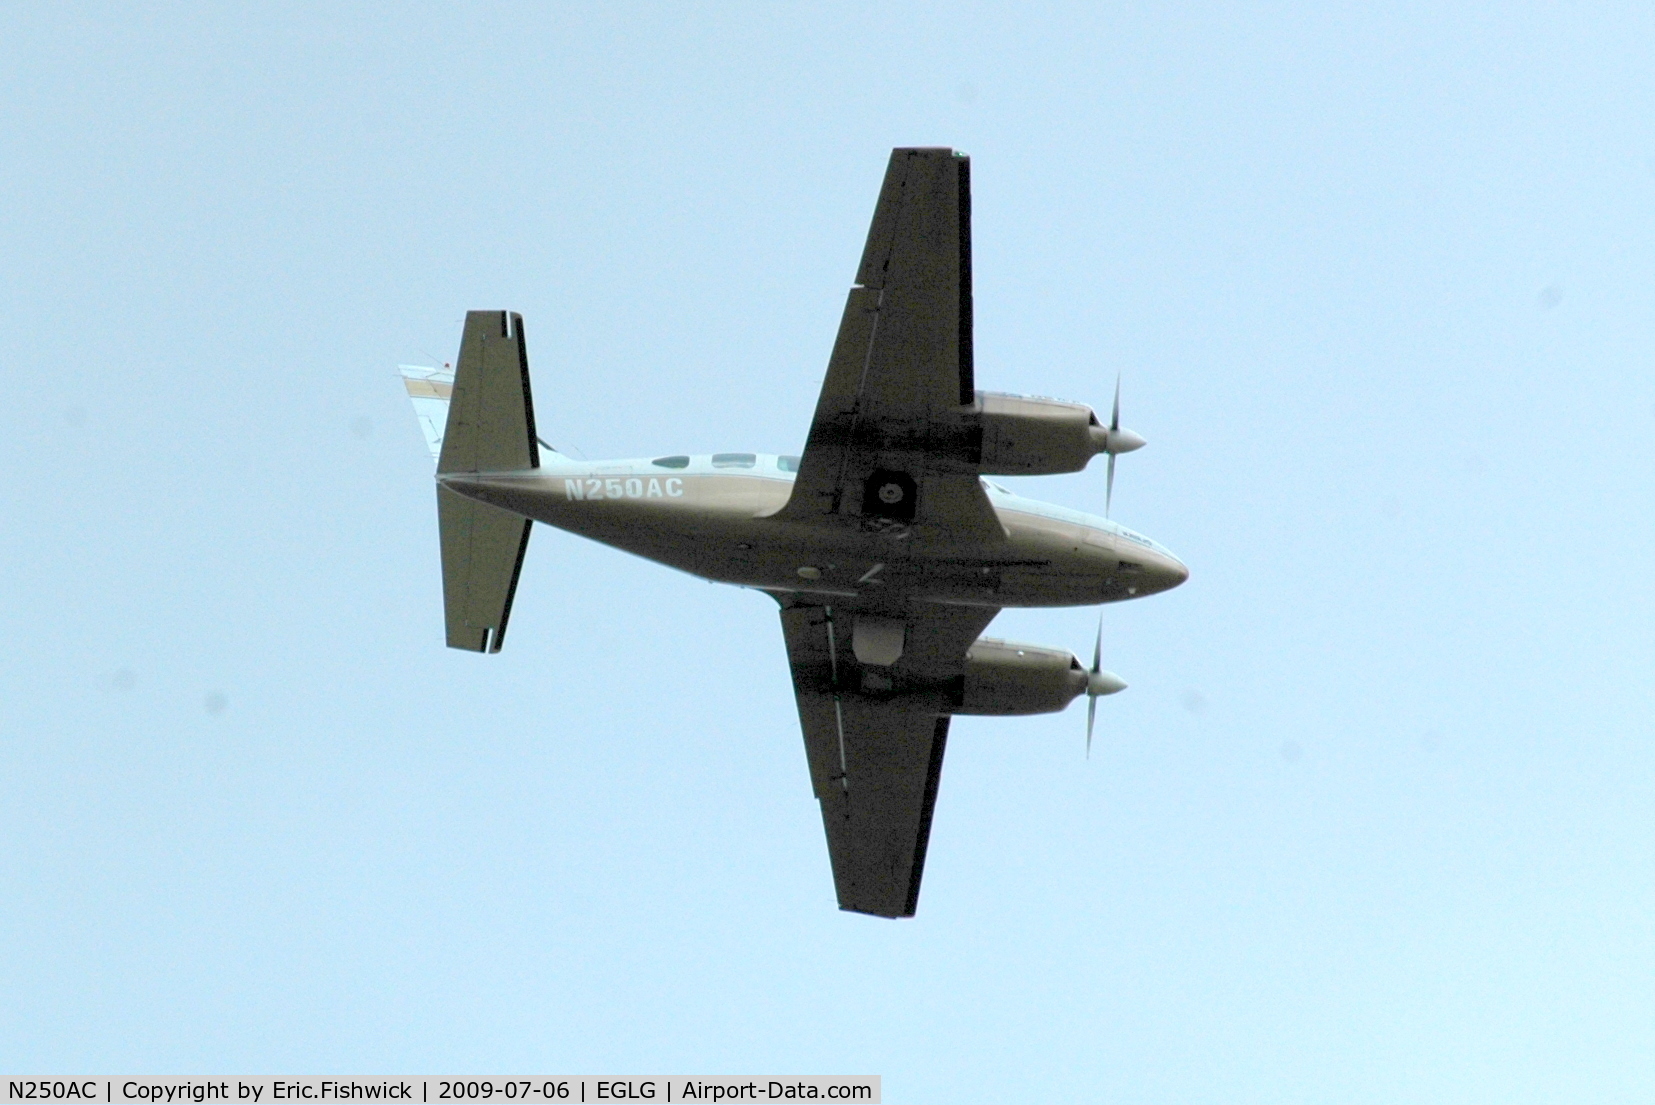 N250AC, Piper PA-31T Cheyenne C/N 31T-7612040, N250AC overflying the house